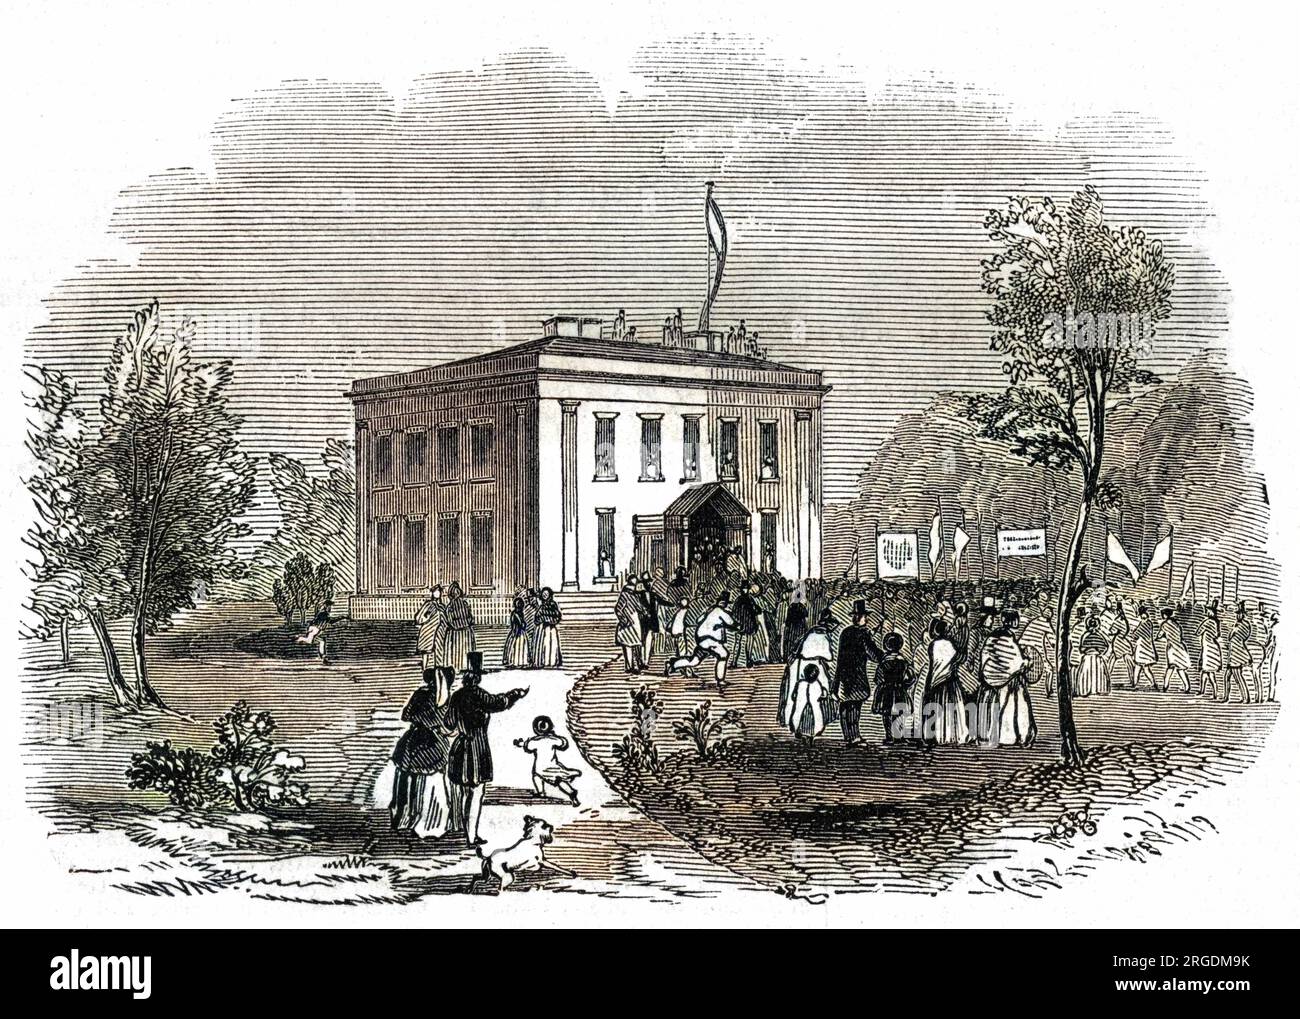 Die Eröffnung des Queen's Park, Manchester, 1846. Erbaut auf dem Gelände von Hendham Hall, Harpurhey, war es einer der ersten städtischen Parks Großbritanniens, entworfen und angelegt von Joshua Major im Jahr 1845. Stockfoto